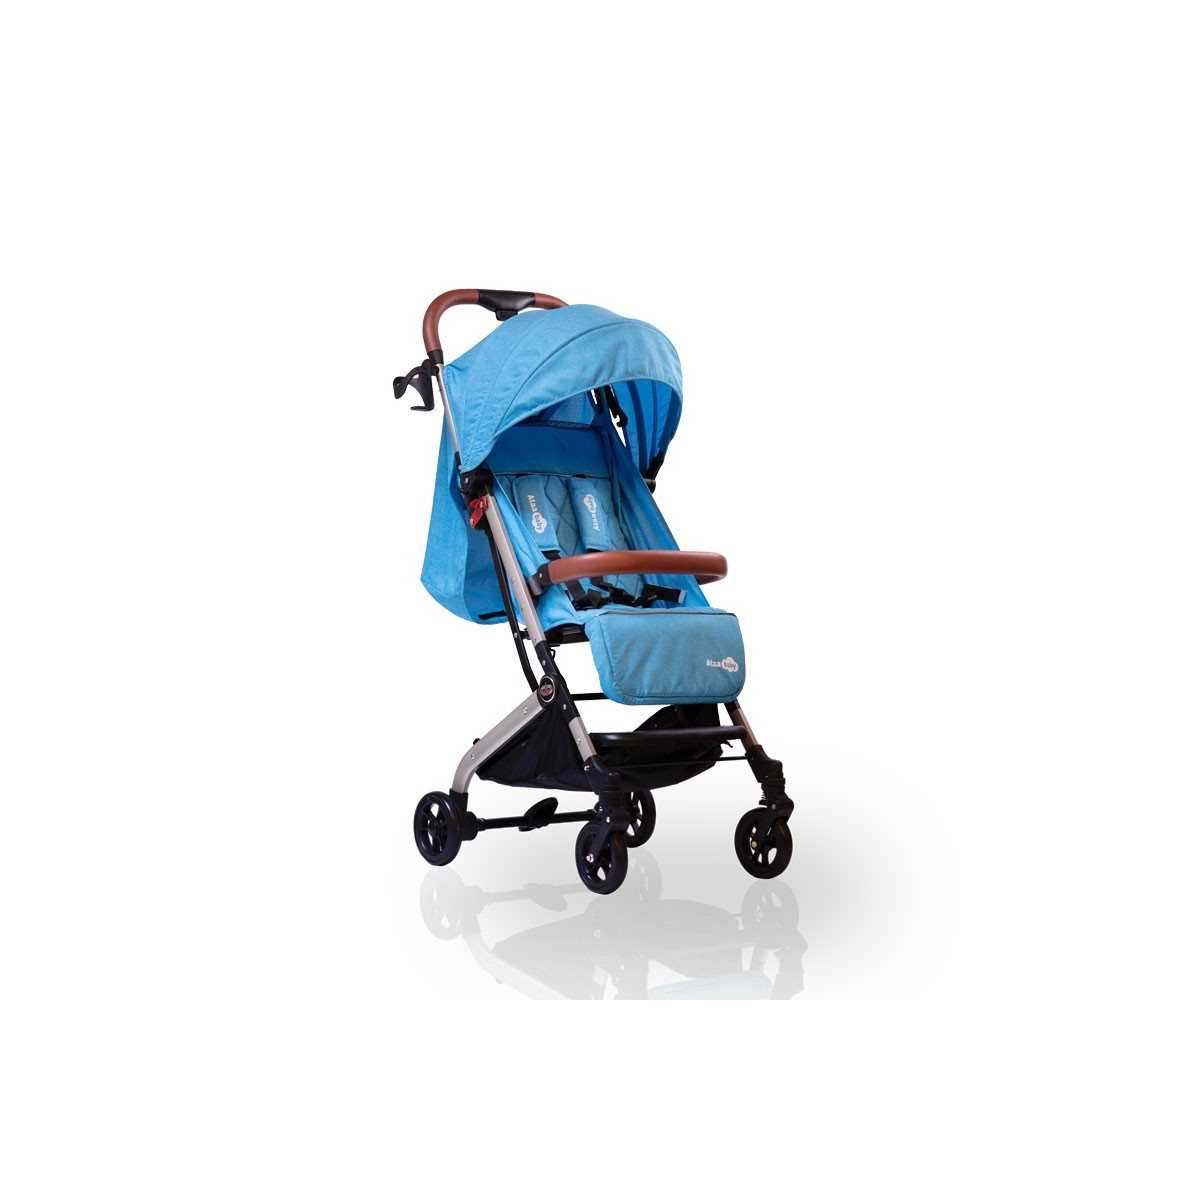 Sillas de paseo ligeras, la mejor manera de viajar con tu bebé de la forma  más cómoda